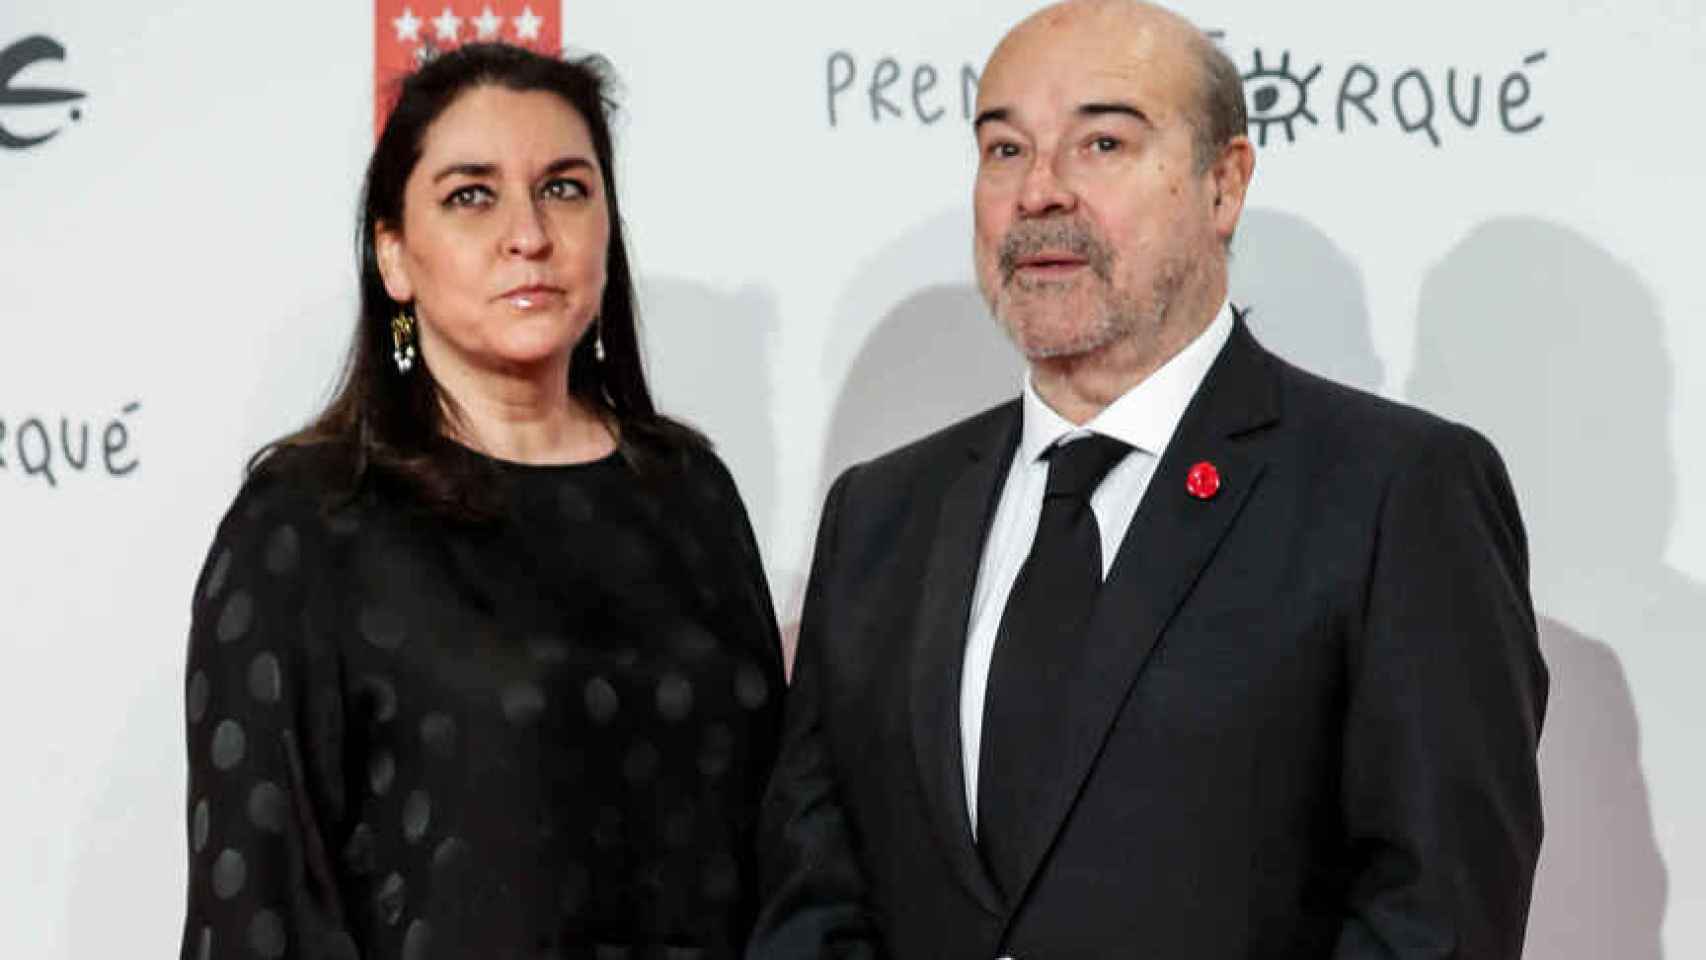 El director de cine Antonio Resines y su mujer, Ana Pérez-Lorente, en un evento público en enero de 2020.